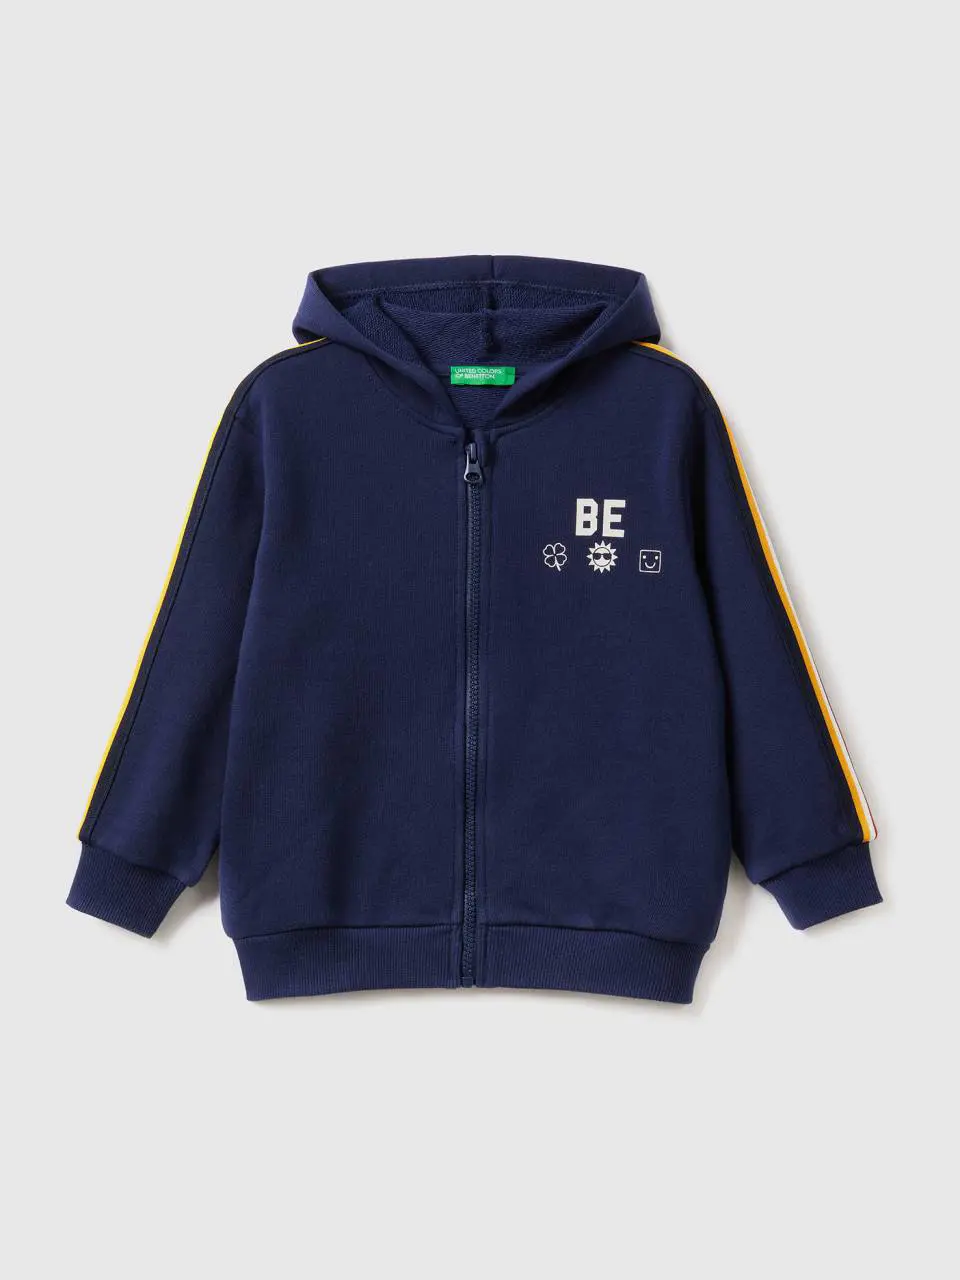 Benetton sweatshirt with "be" print. 1